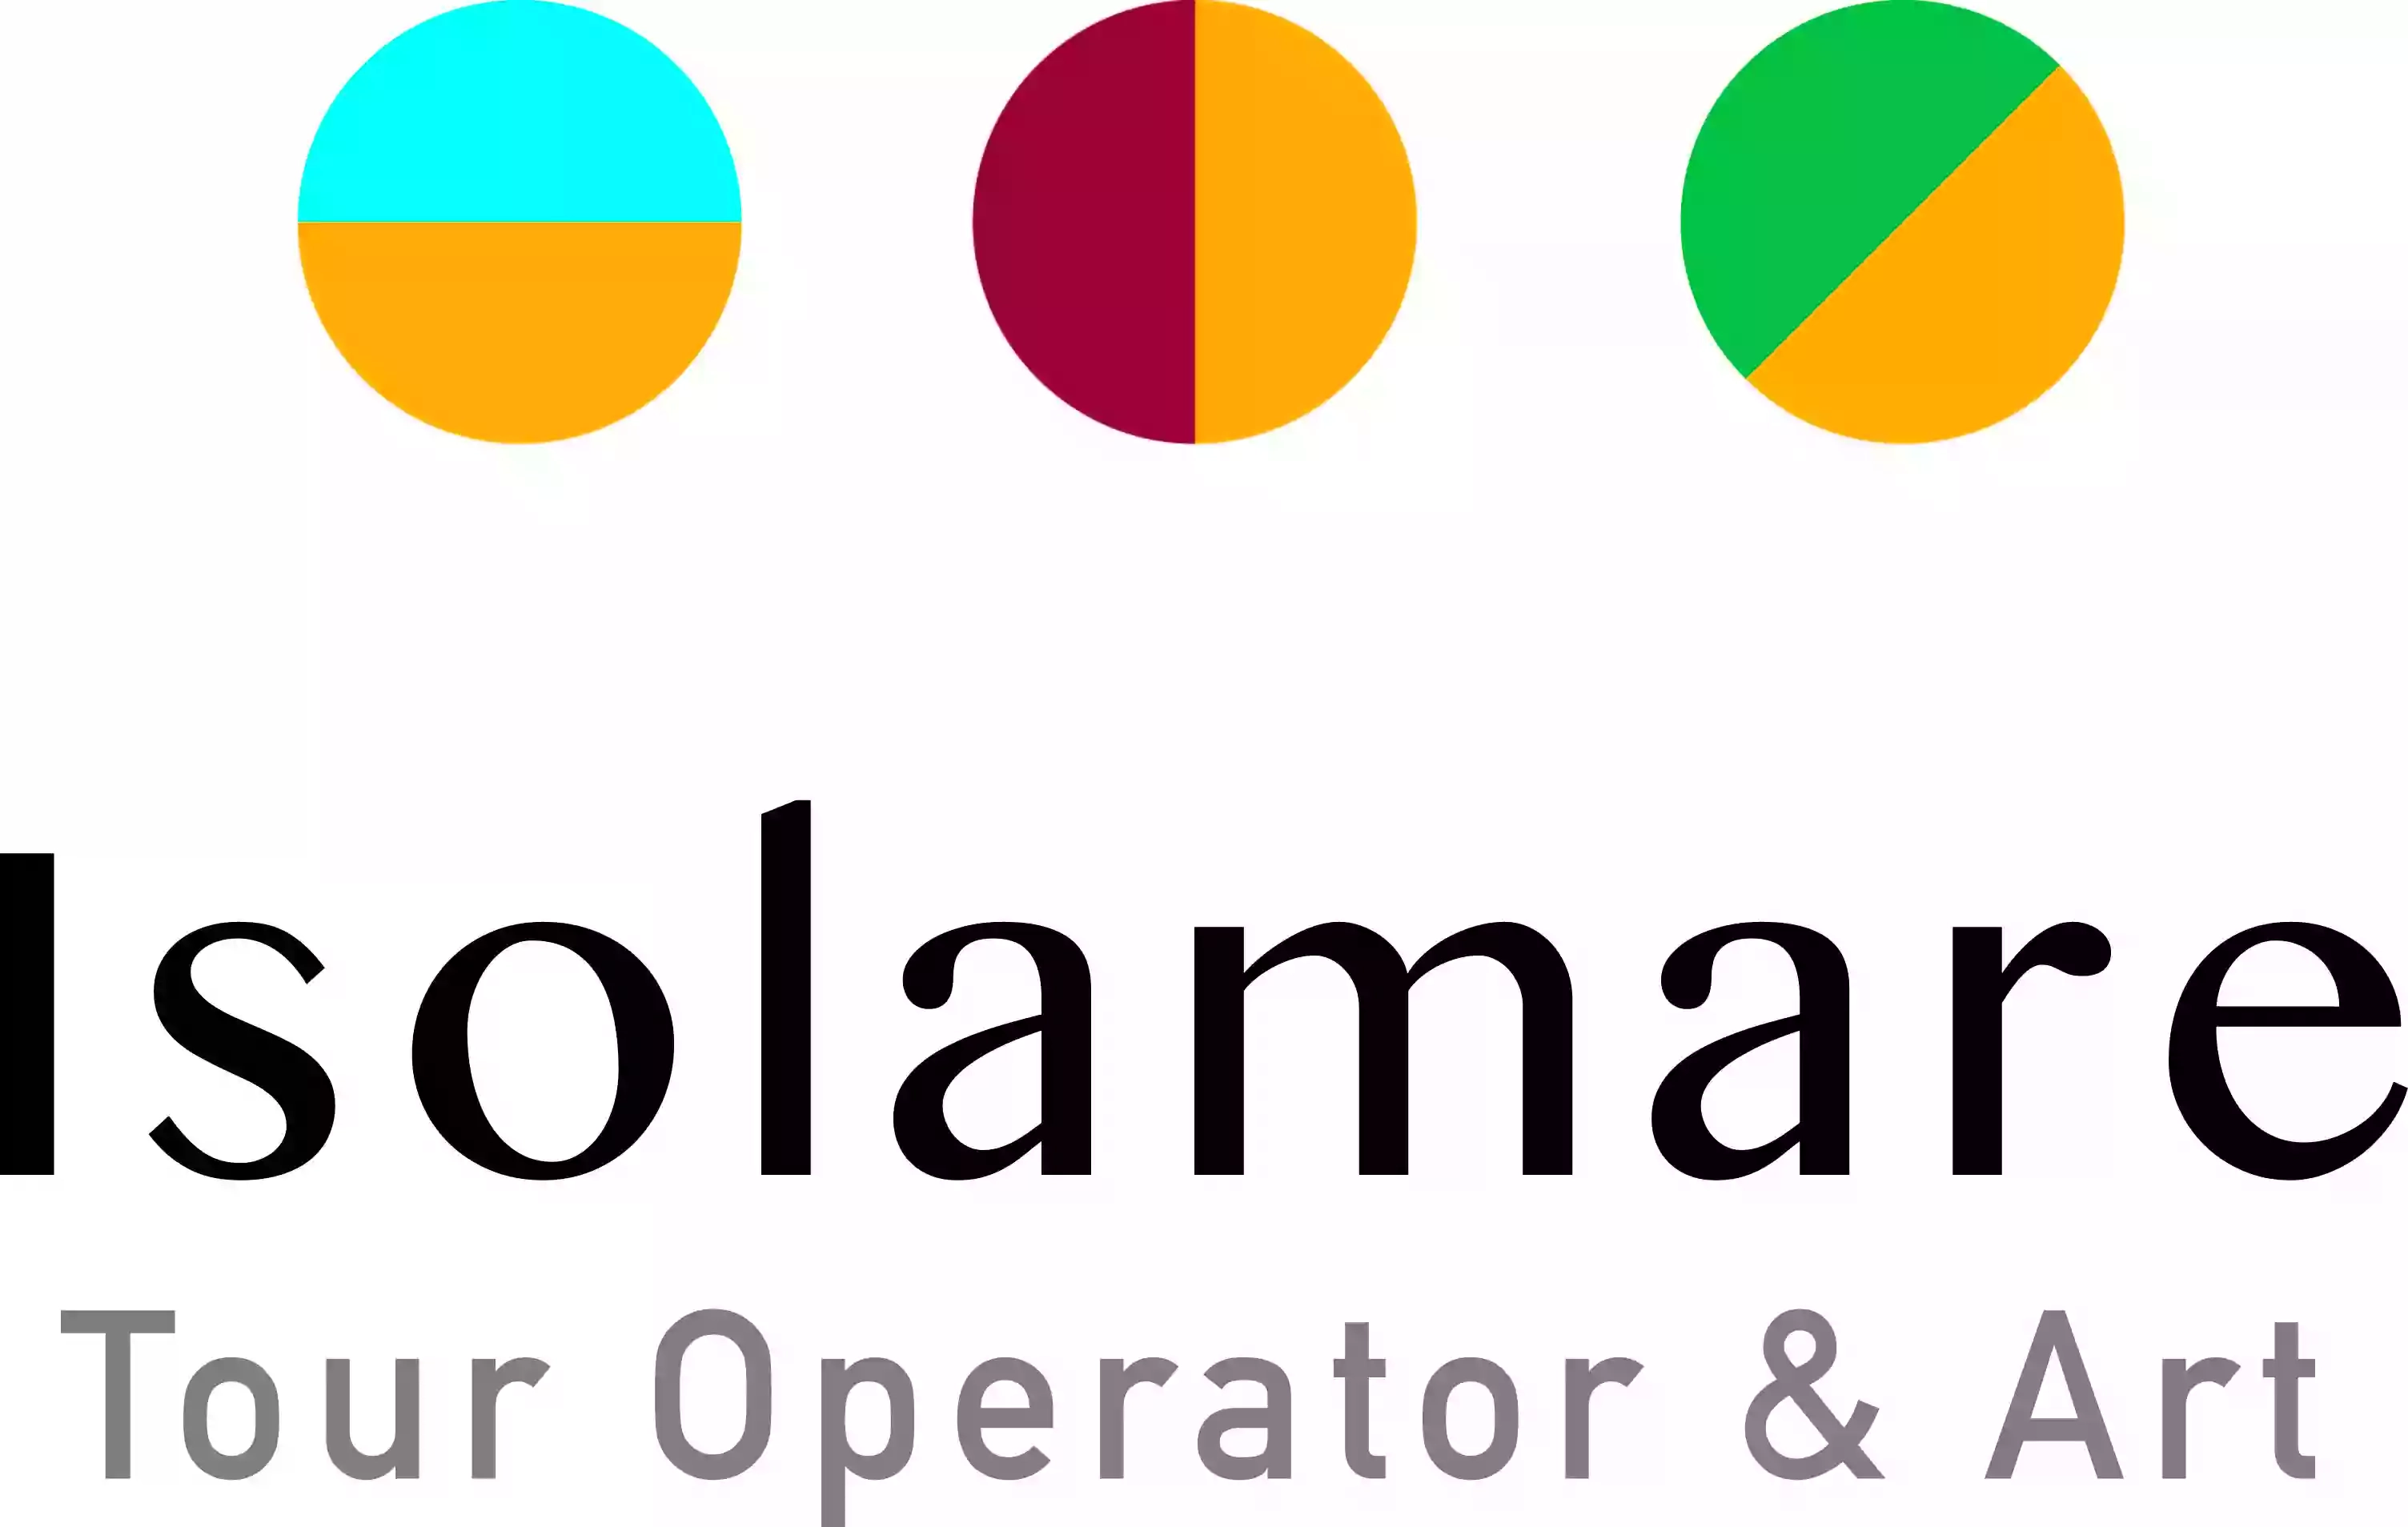 Isolamare Tour Operator & Art